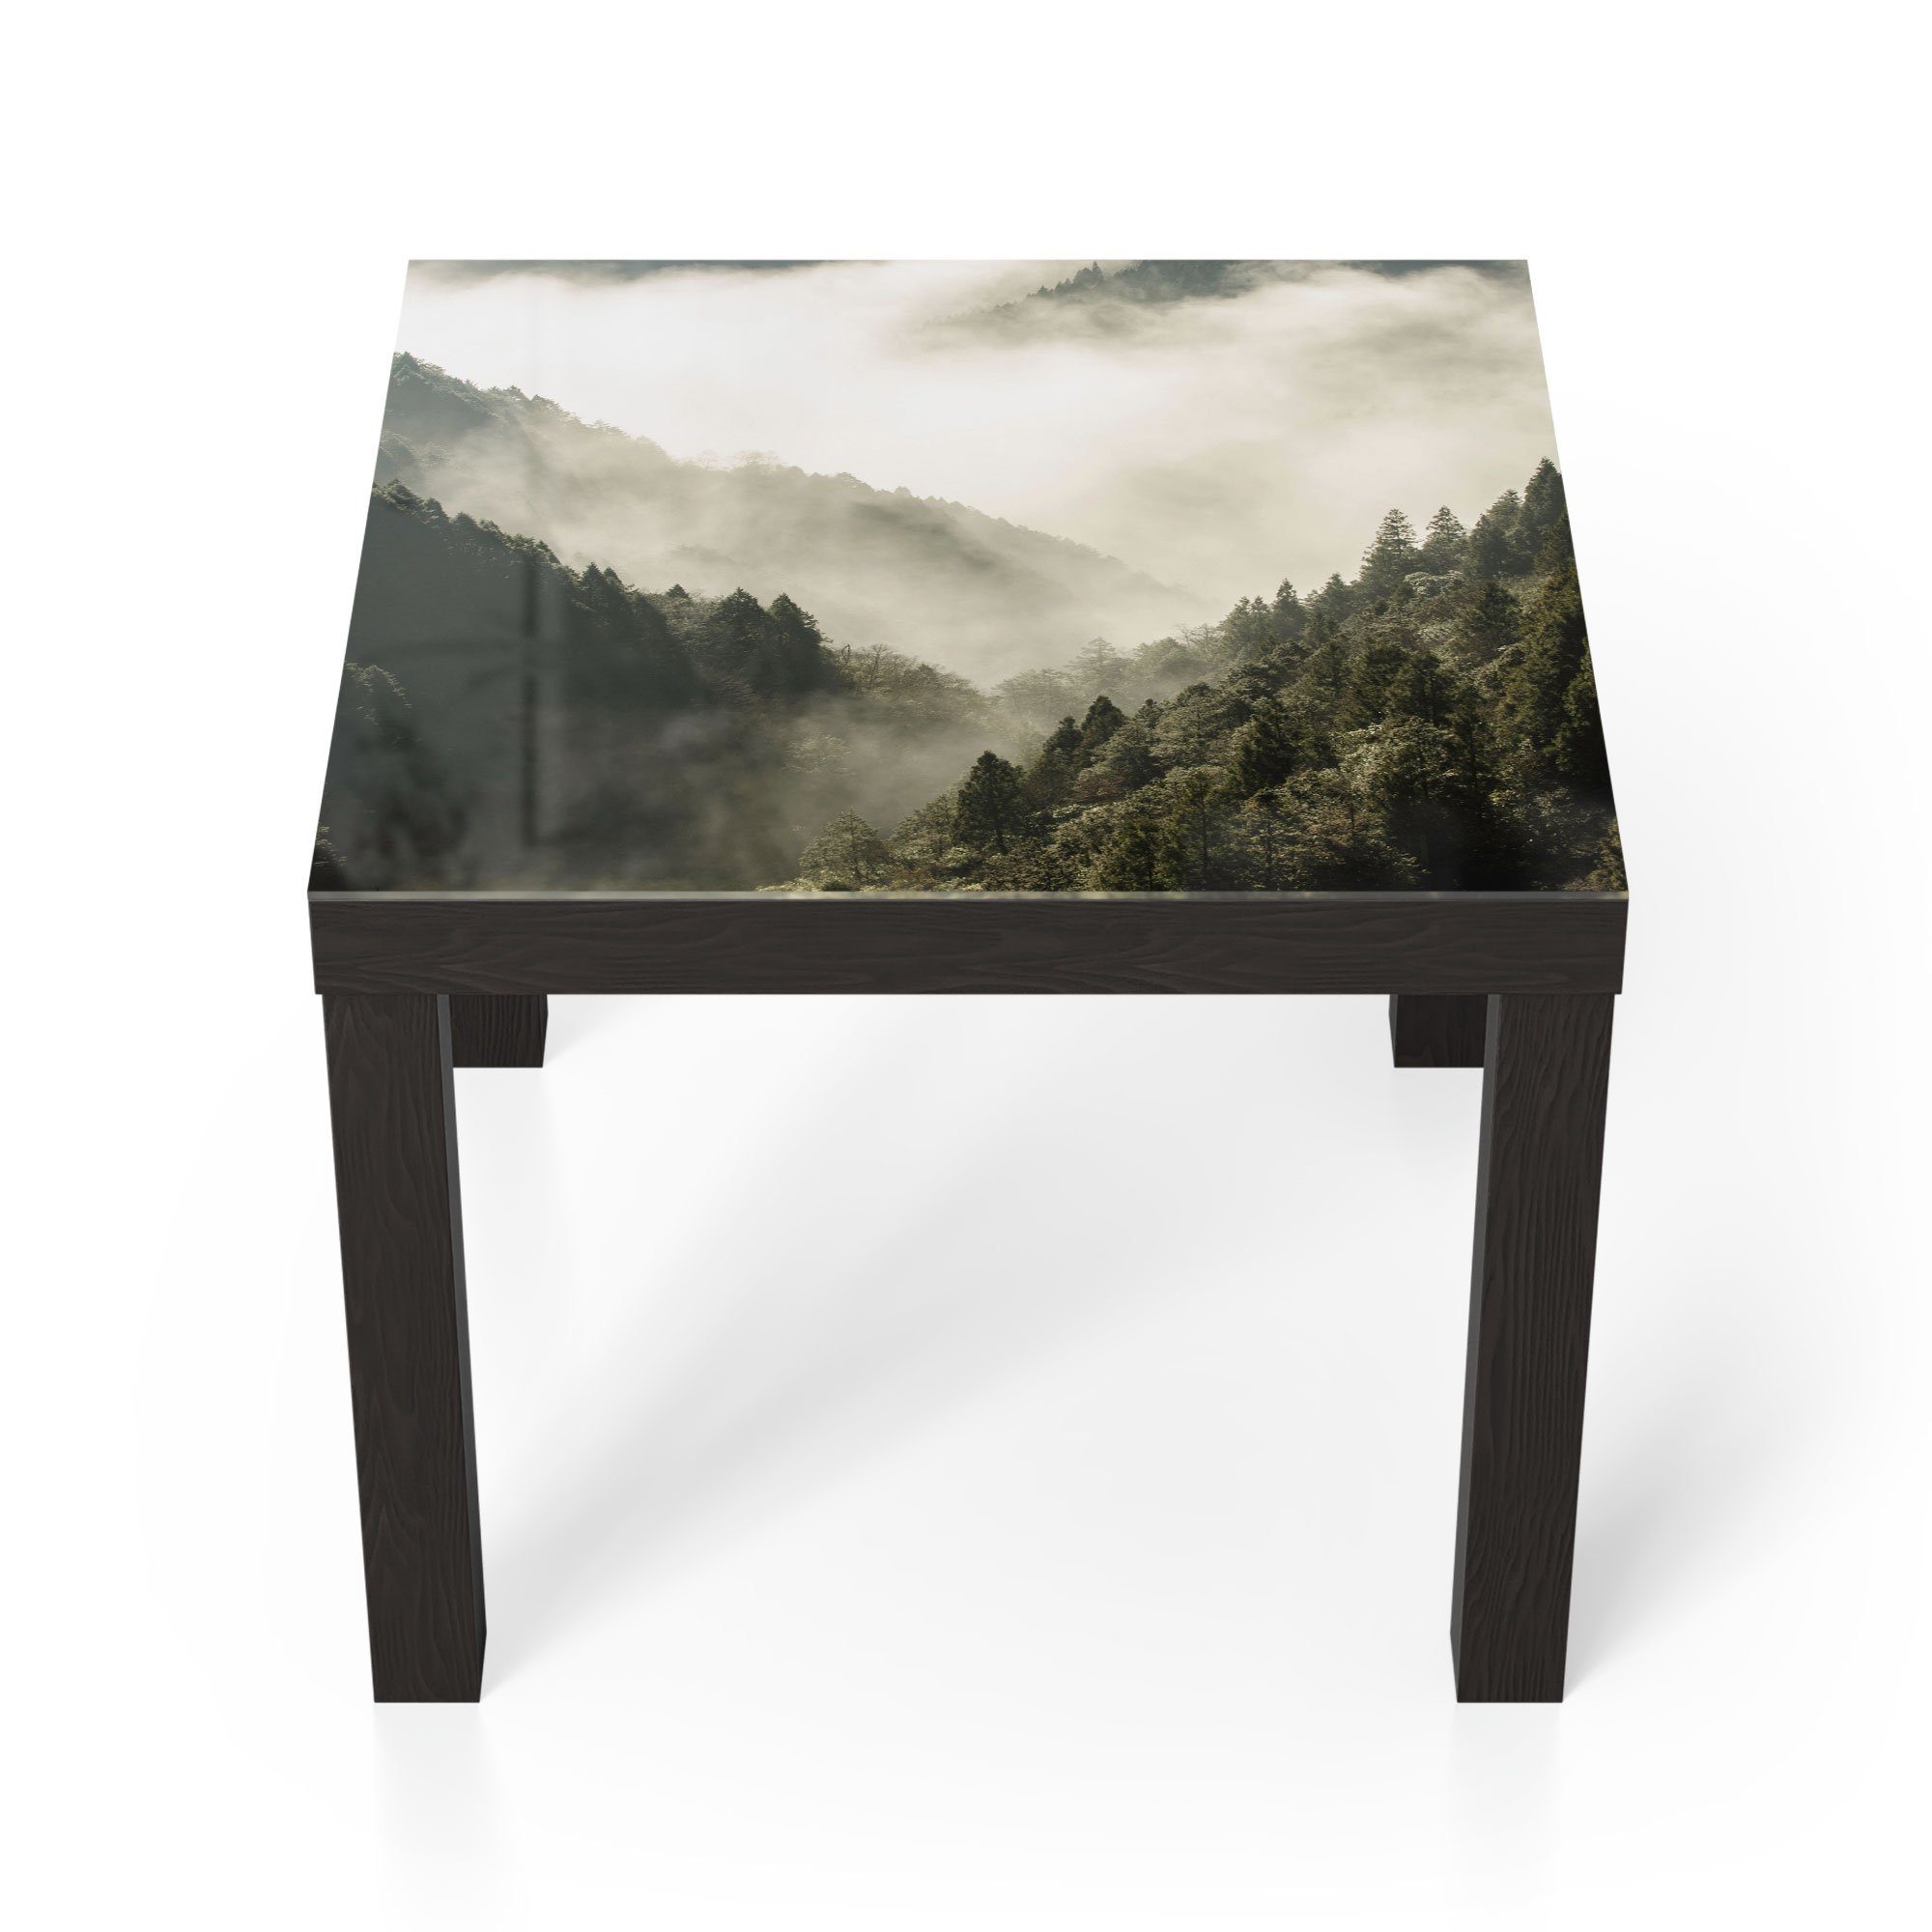 DEQORI Couchtisch 'Nebel in den Bergen', Glas Beistelltisch Glastisch modern Schwarz